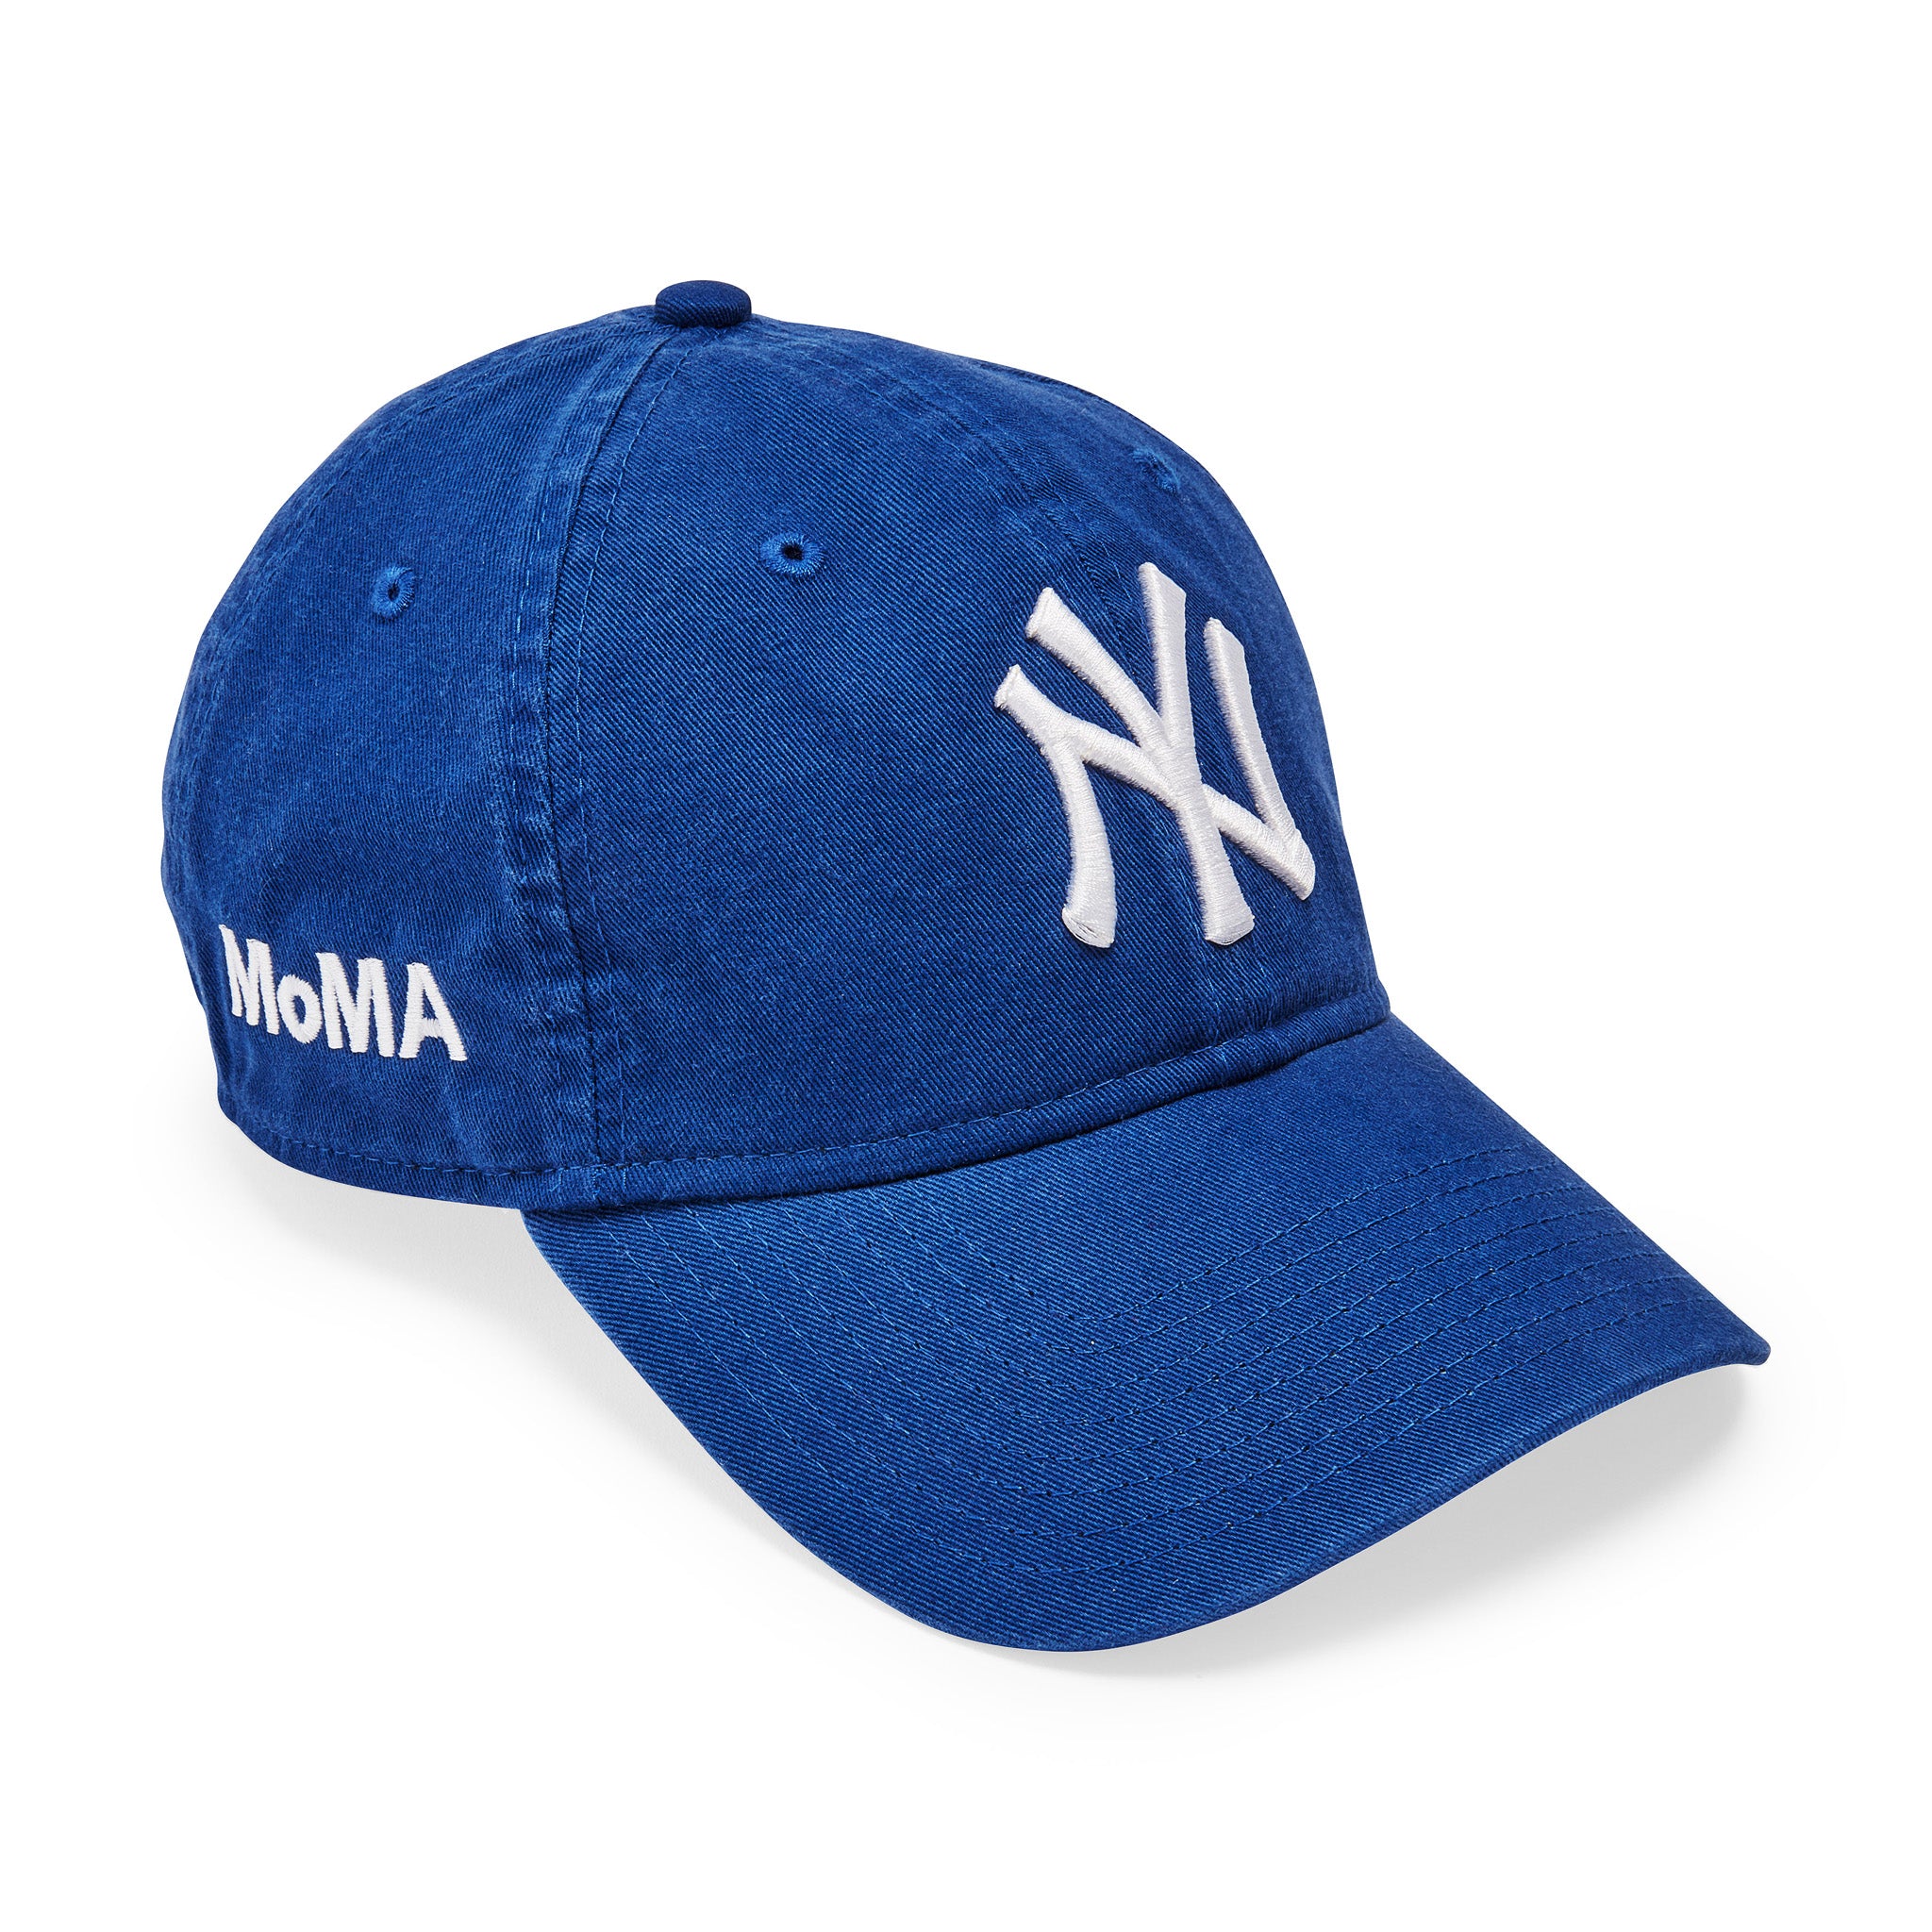 MoMA NY Yankees Adjustable Baseball Cap - Bright Royal